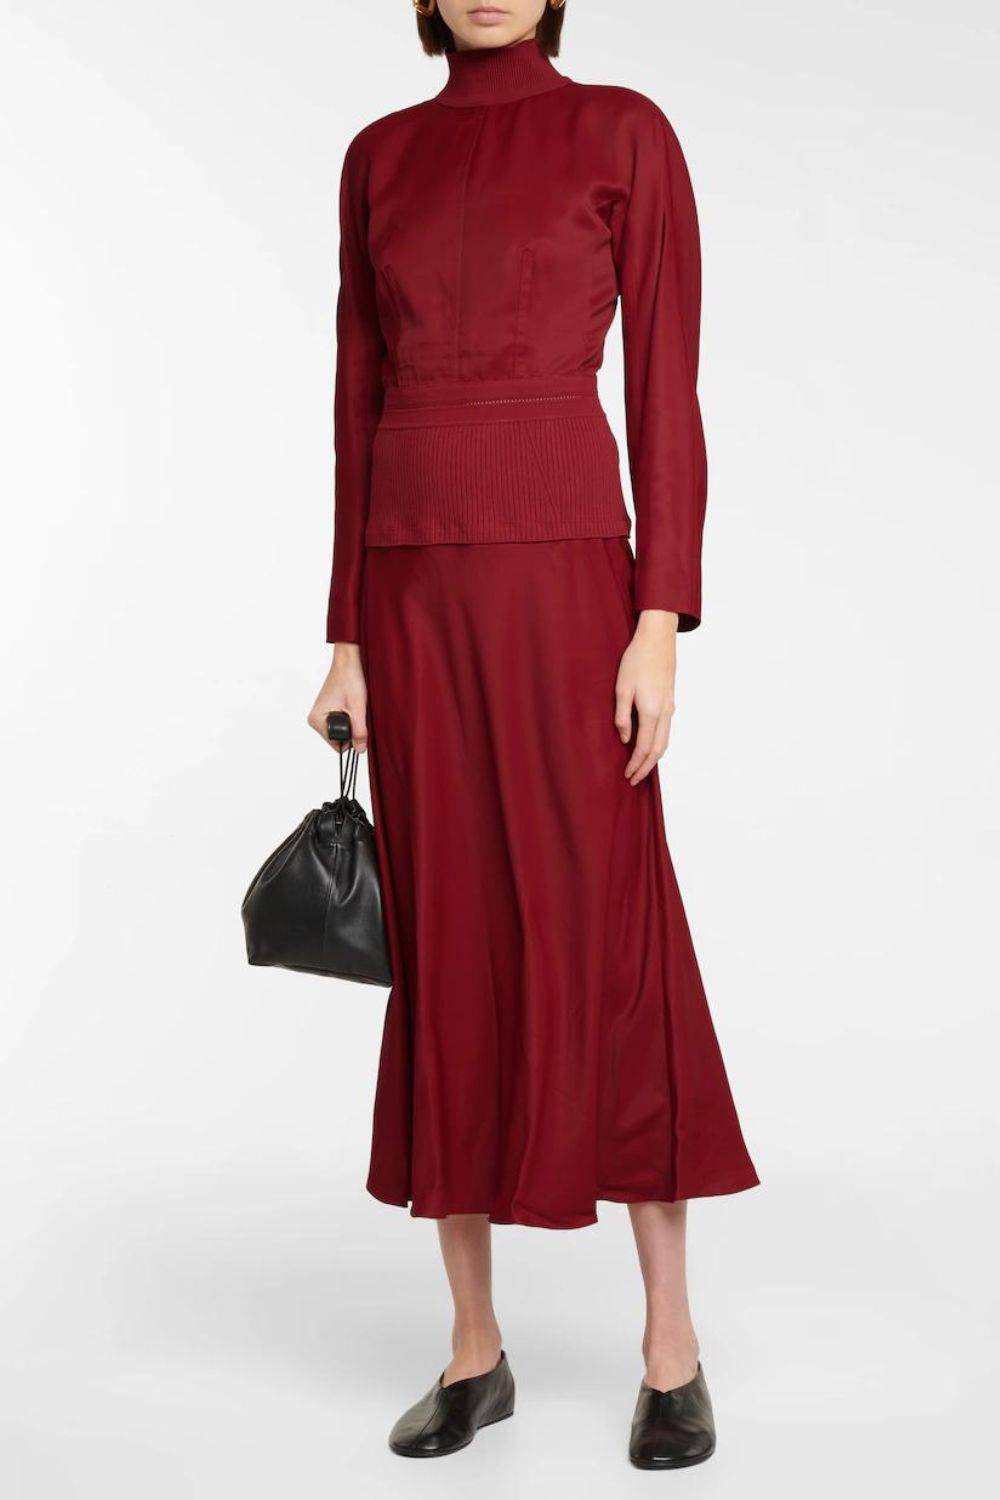 Modna sukienka na jesień w popularnej czerwieni, Jil Sander, przeceniona na ok. 4720 zł (Fot. materiały prasowe)